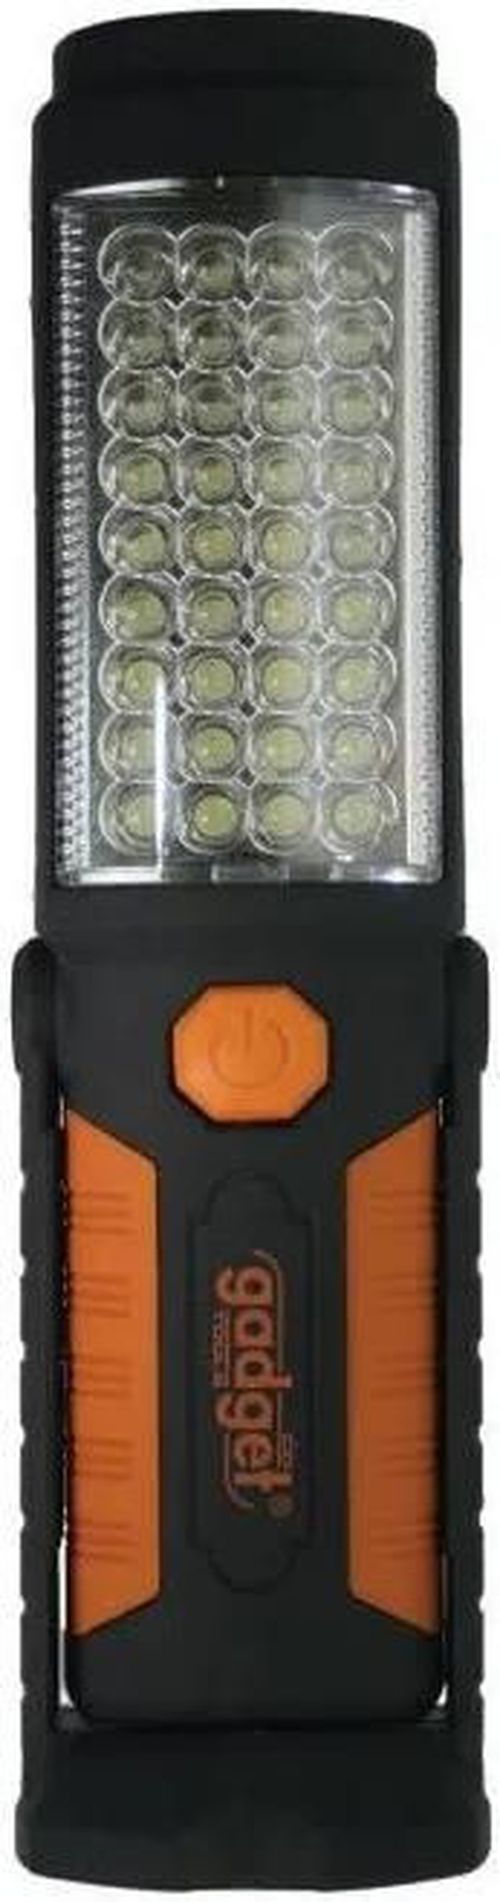 купить Фонарь Gadget tools 905001 36 светодиодов в Кишинёве 